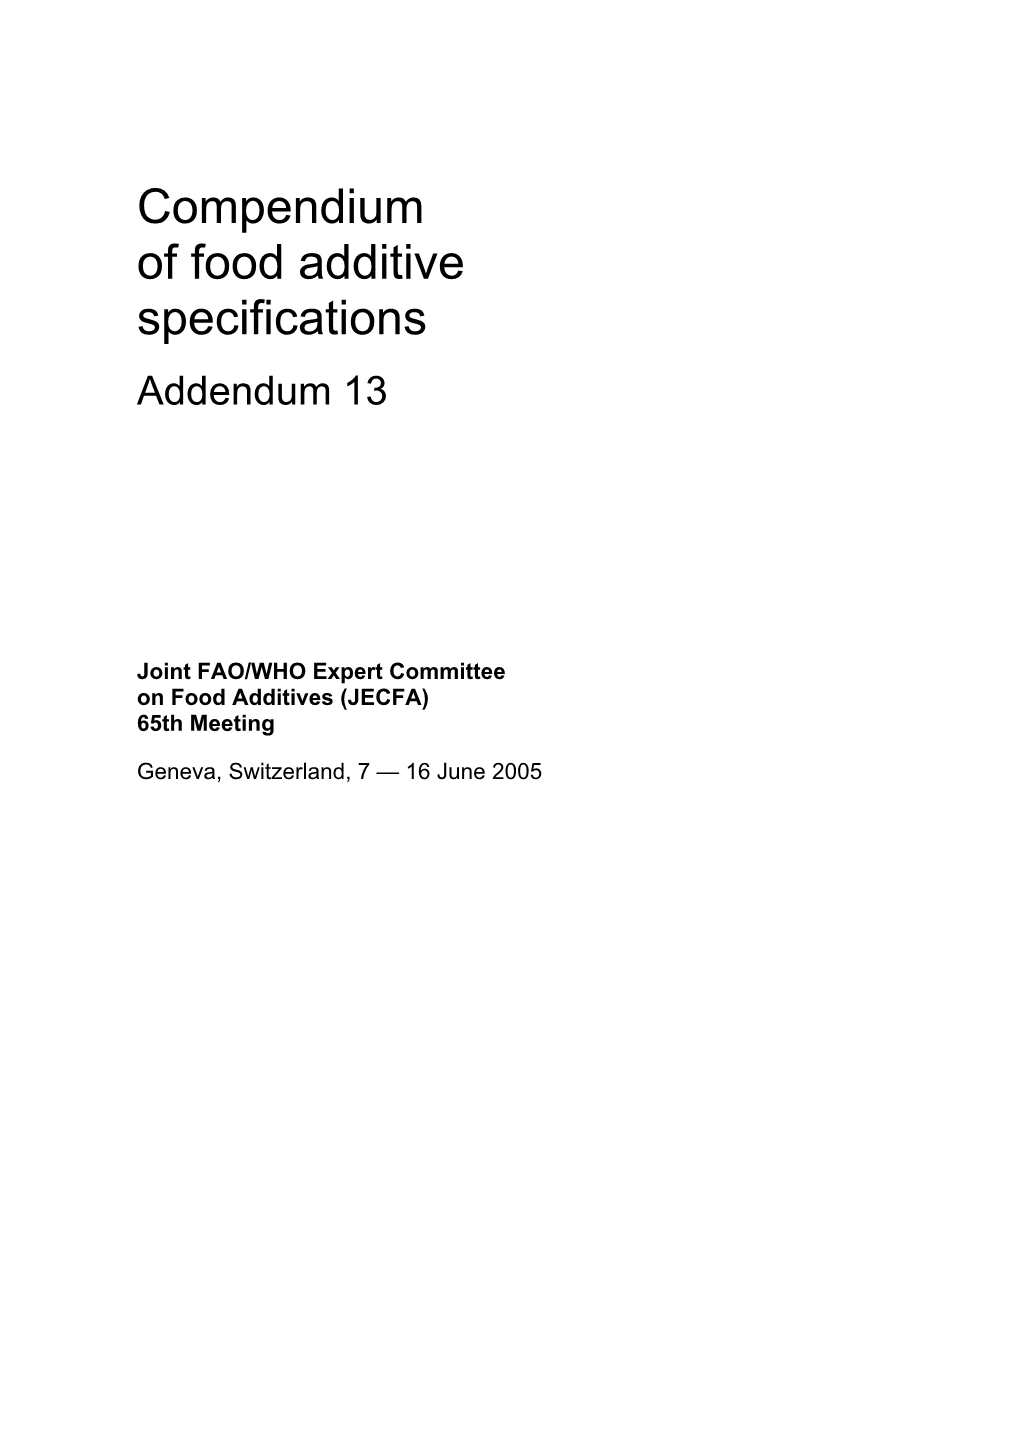 Compendium of Food Additive Specifications Addendum 13